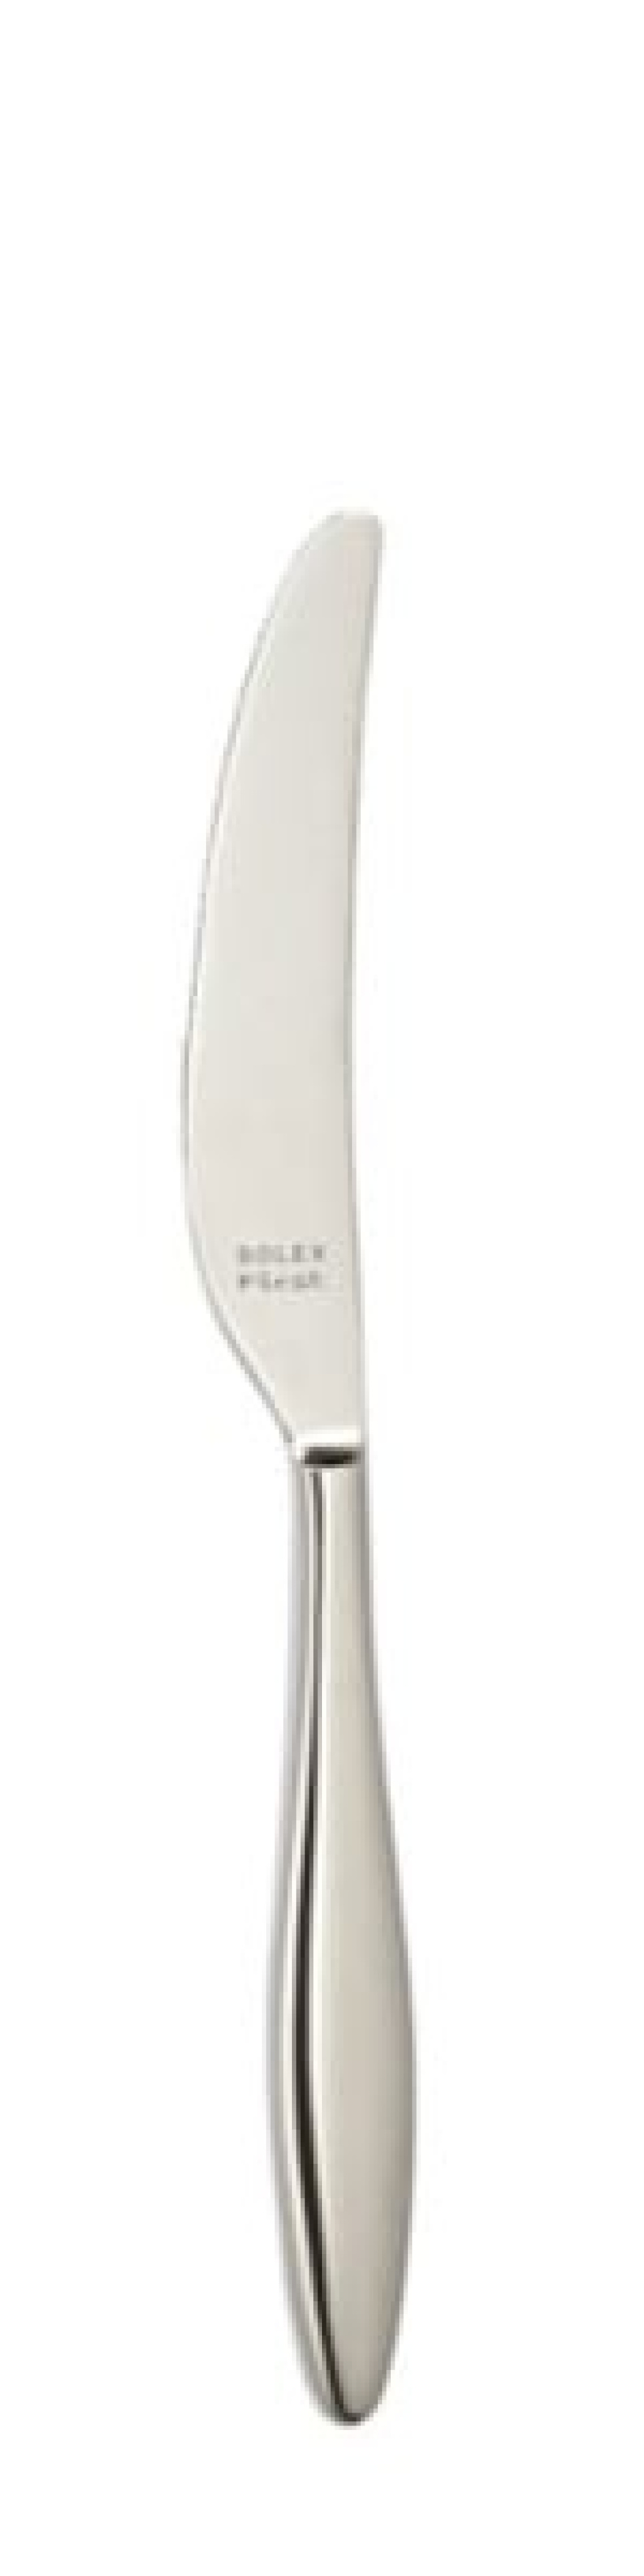 Terra Tafelmesser 240 mm - Solex in der Gruppe Tischgedeck / Besteck / Messer bei The Kitchen Lab (1284-21643)